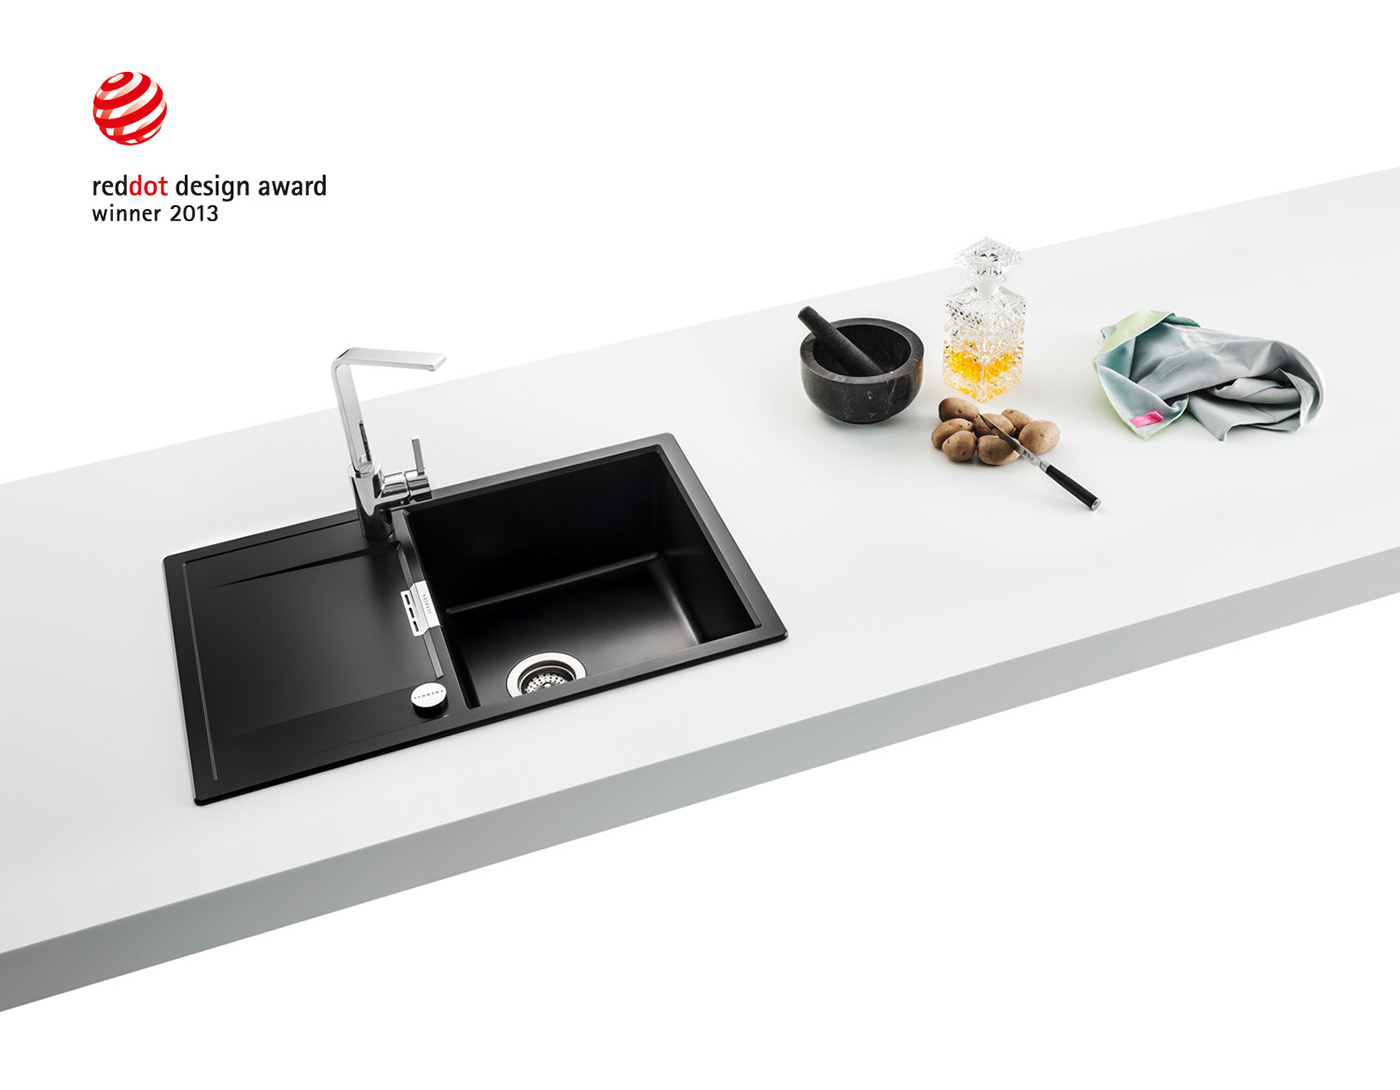 kitchen Sink Mono mukomelov  design product industrial Minimalism philosophy  Cristadur Red Dot